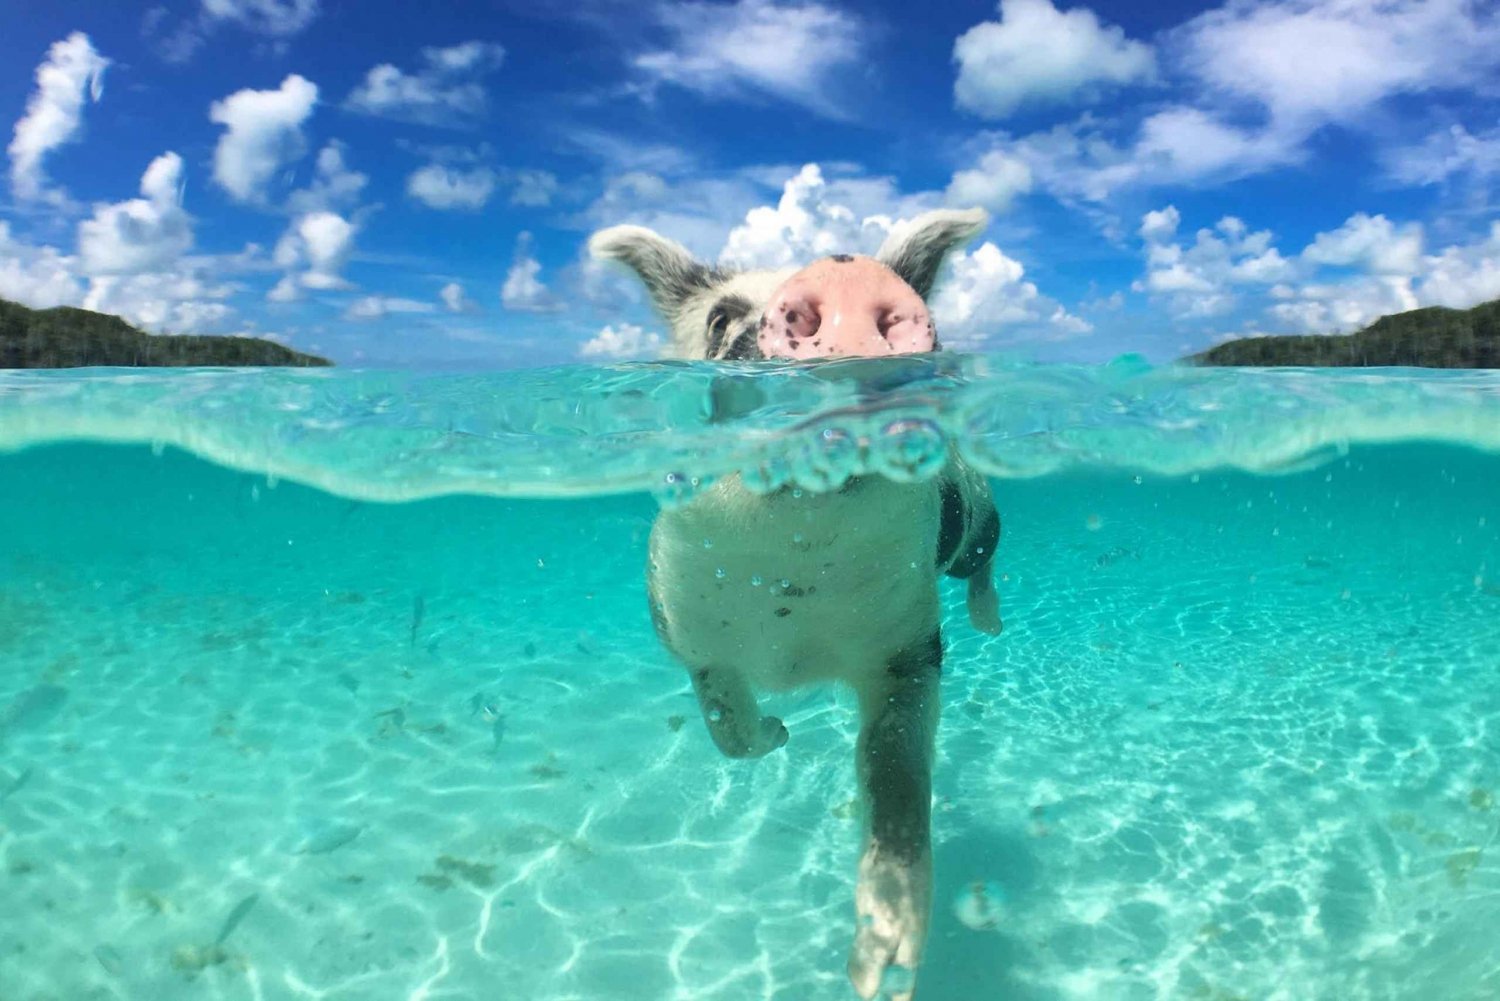 Simmande grisar och snorklingsäventyr på båt med glasbotten